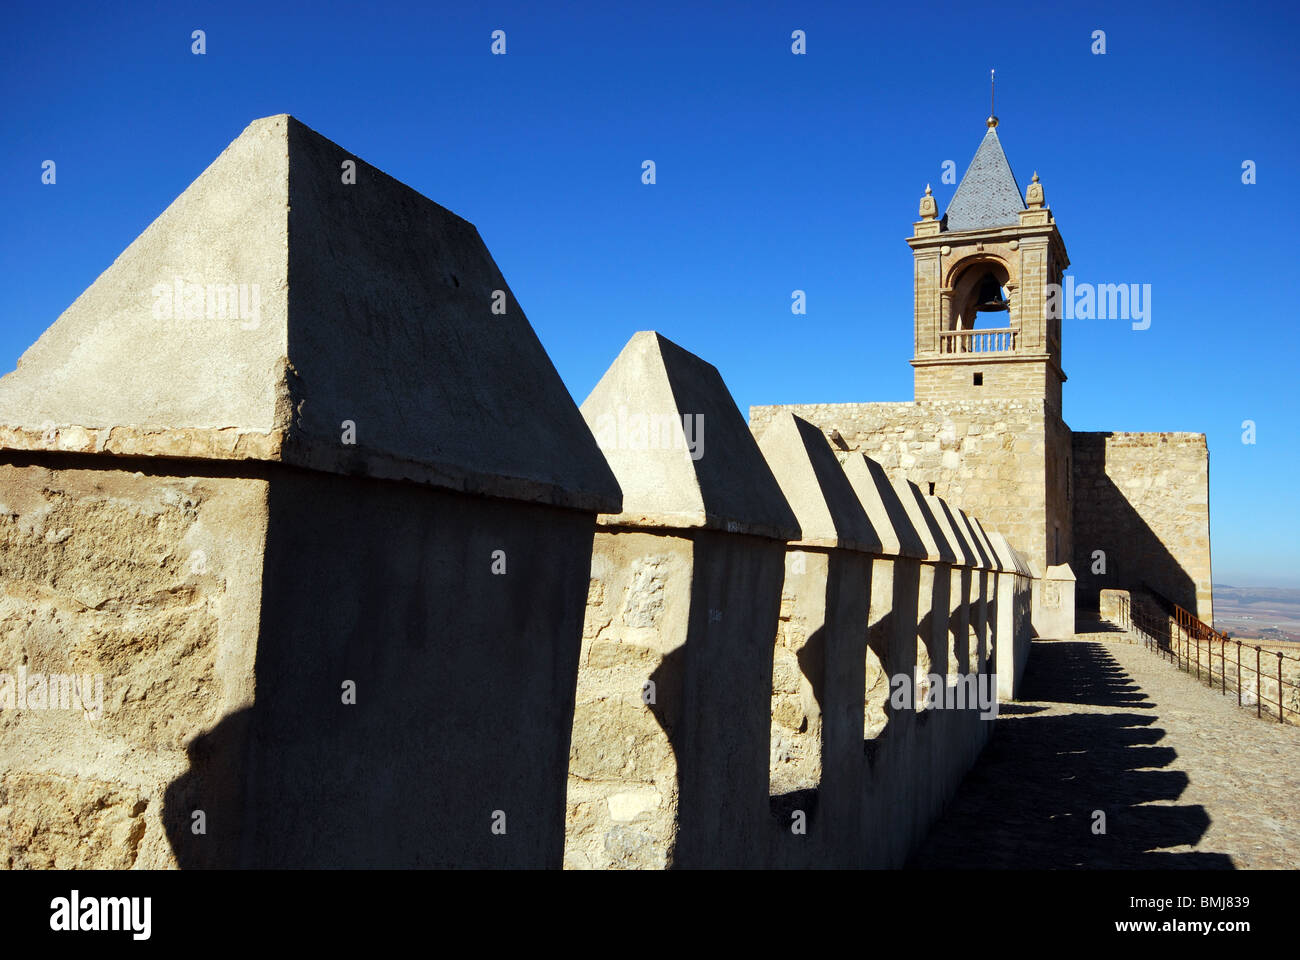 Merli del castello e il campanile a torre, Antequera, provincia di Malaga, Andalusia, Spagna, Europa occidentale. Foto Stock